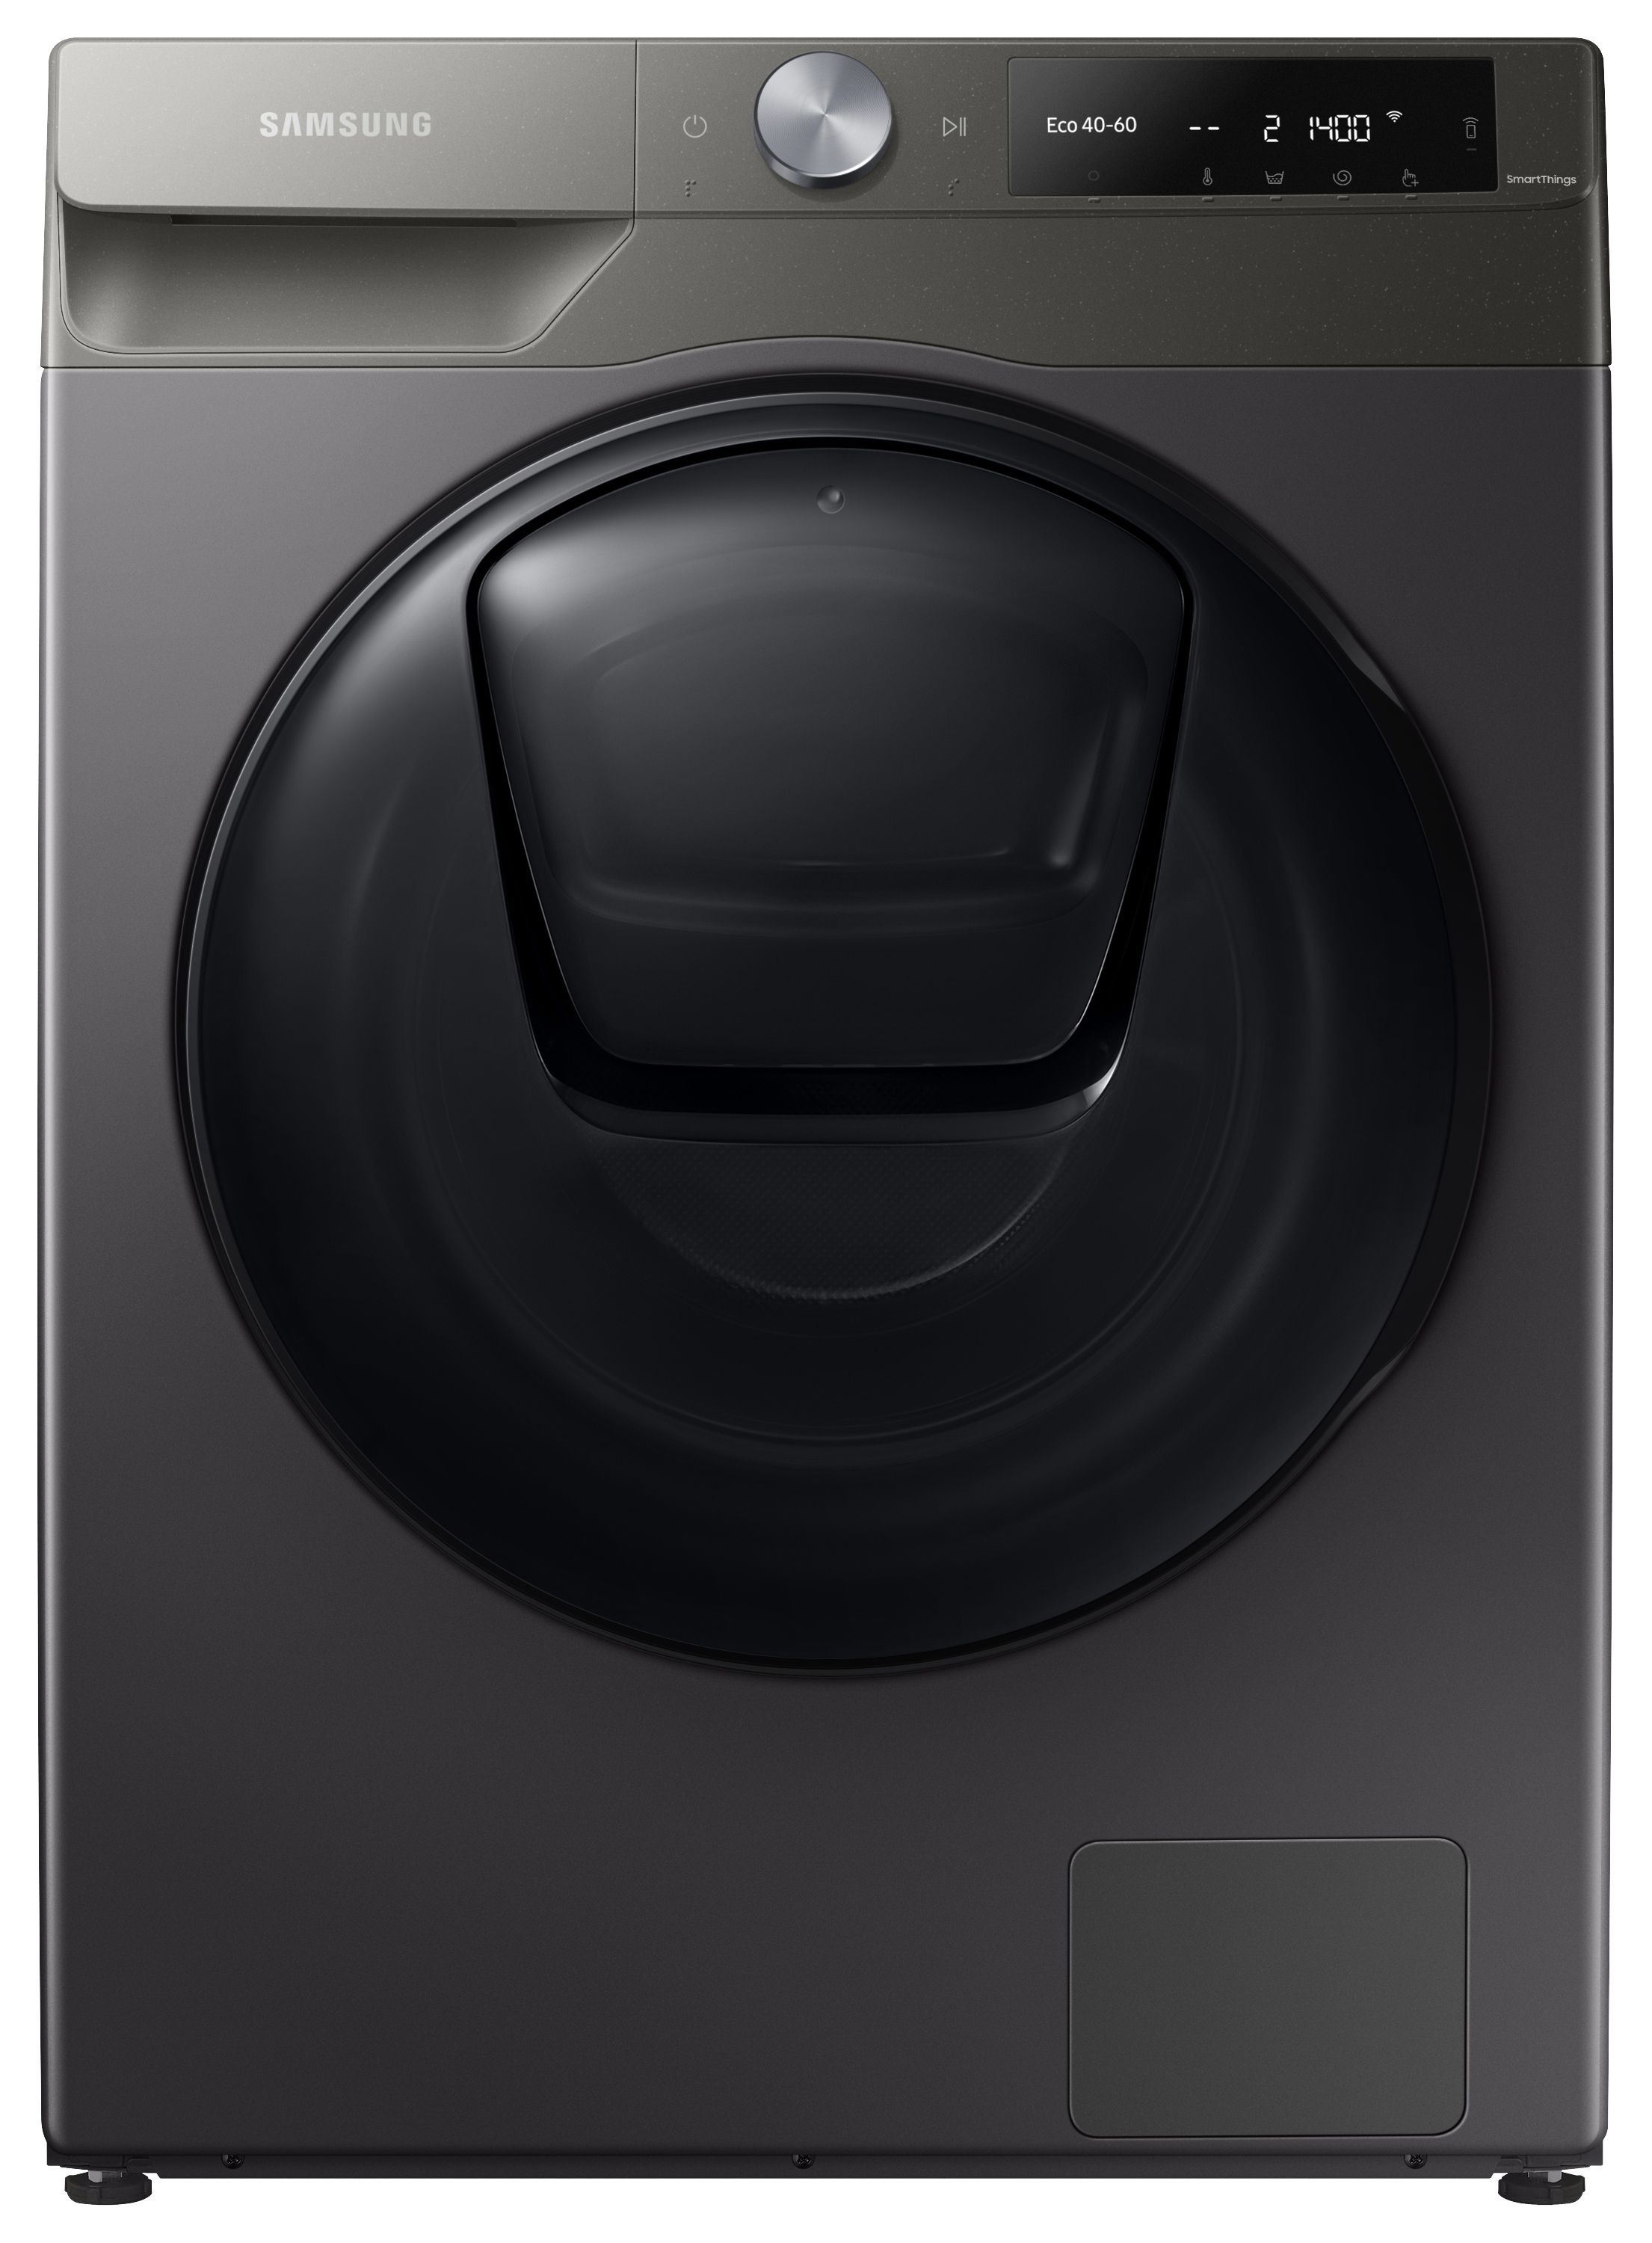 Samsung Series 6 WD90T654DBN/S1 AddWash 9/6kg Washer Dryer - Graphite